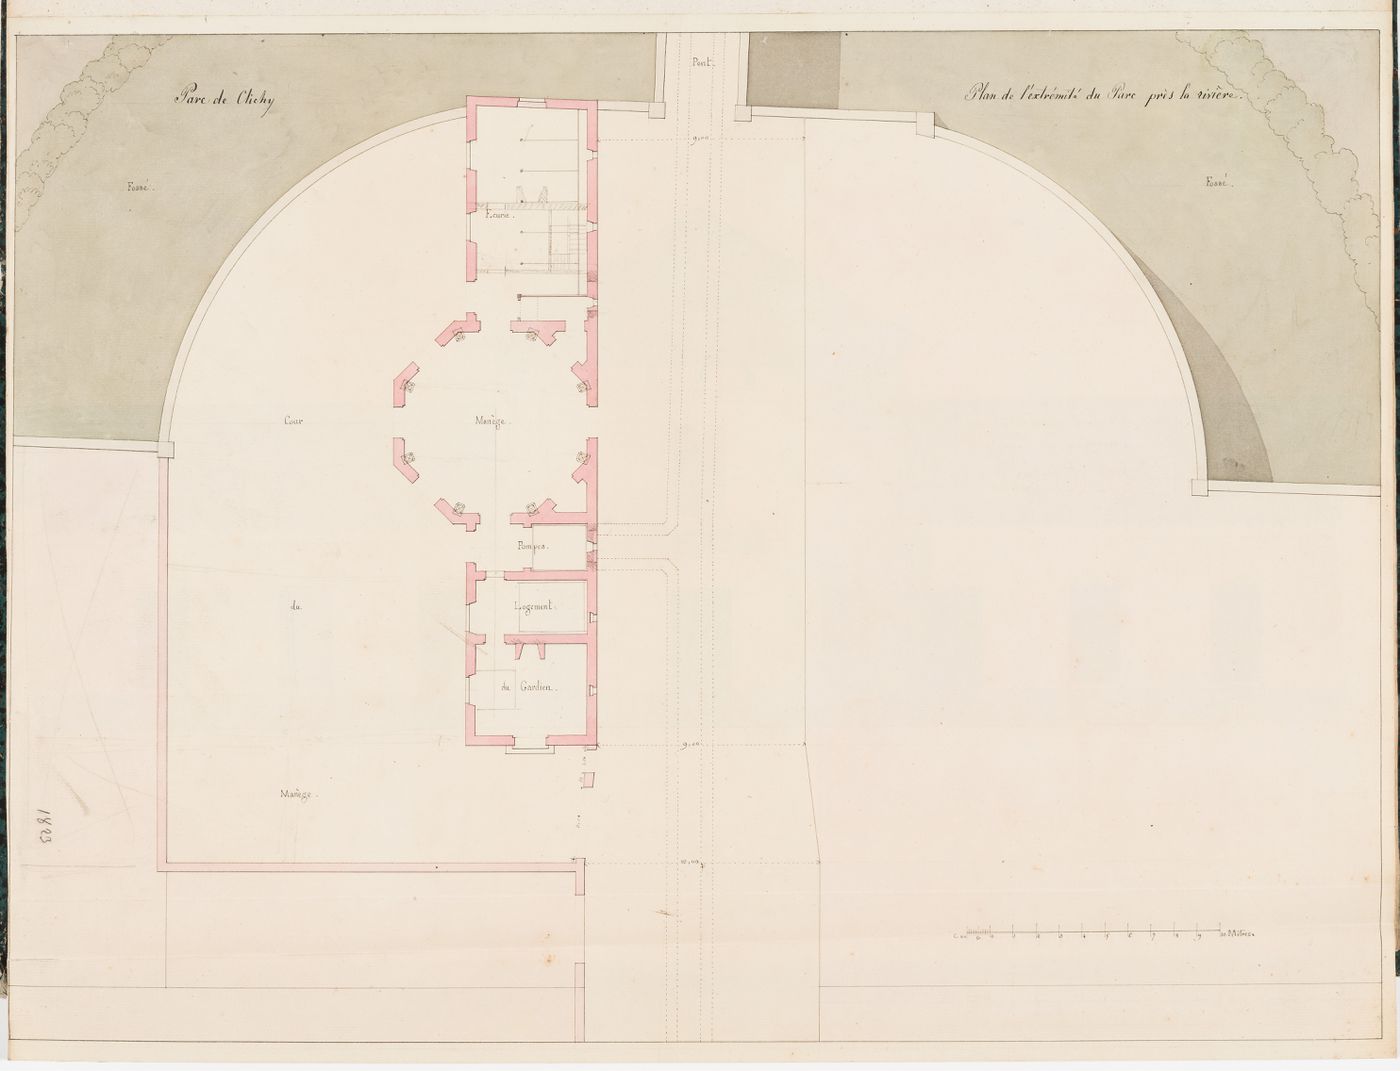 Partial site plan for Parc de Clichy including a plan for a manège